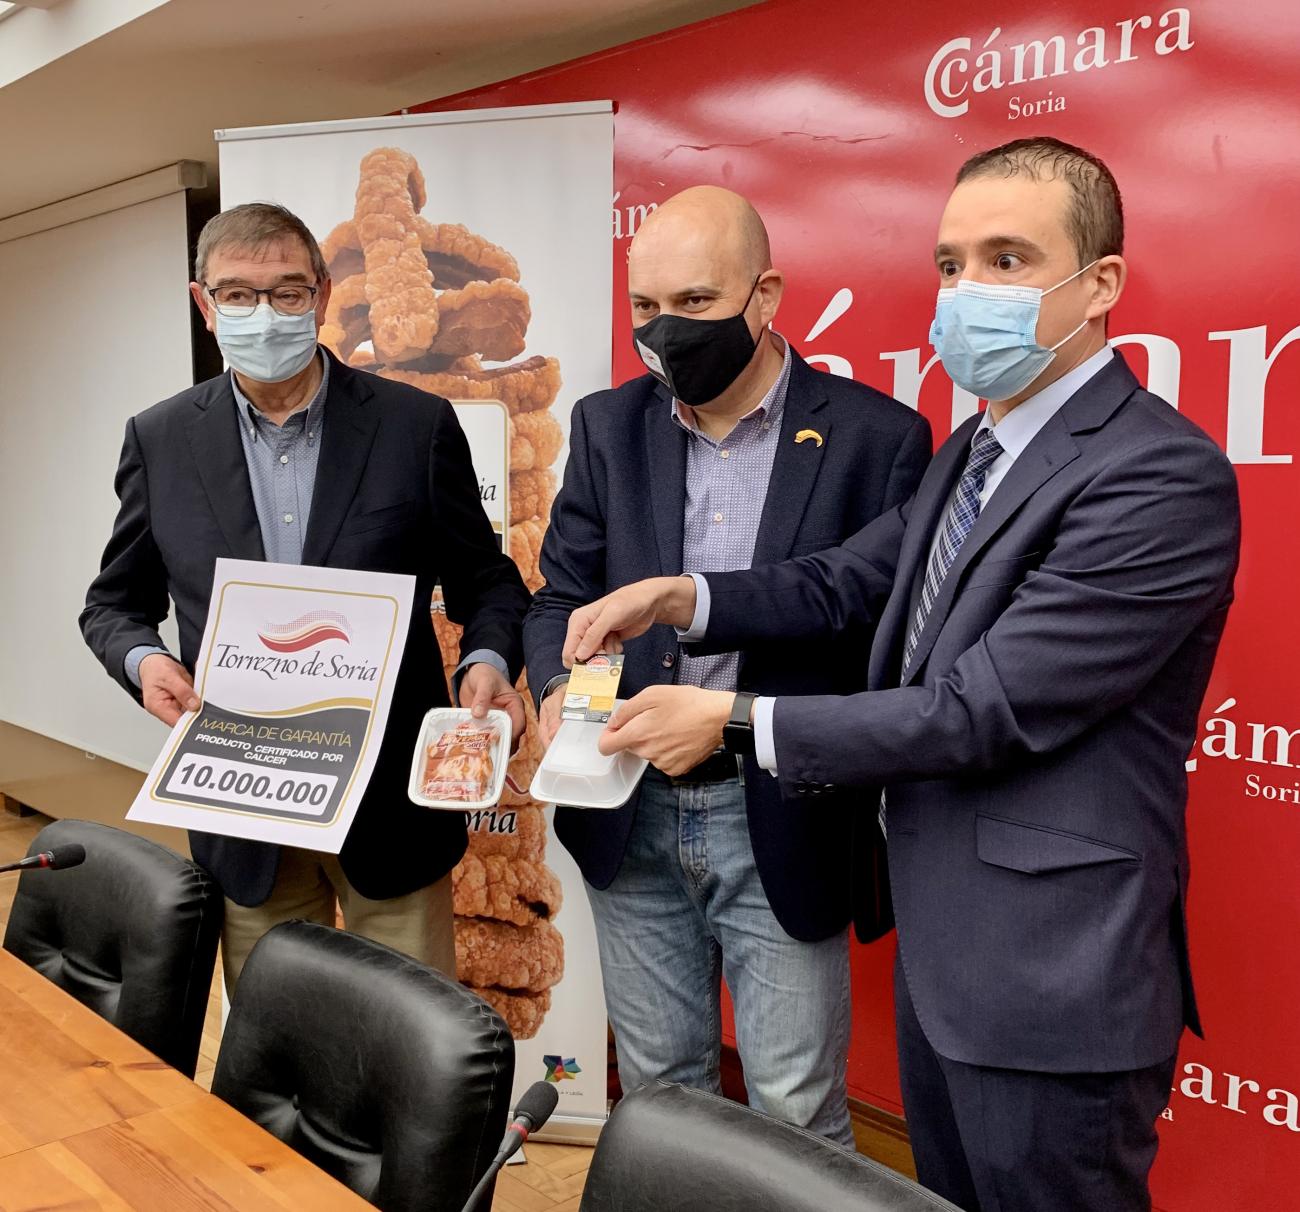 La Marca de Garantía Torrezno de Soria bate un nuevo récord con 1,75 millones de kilos en 2021, superando ampliamente las cifras previas a la pandemia